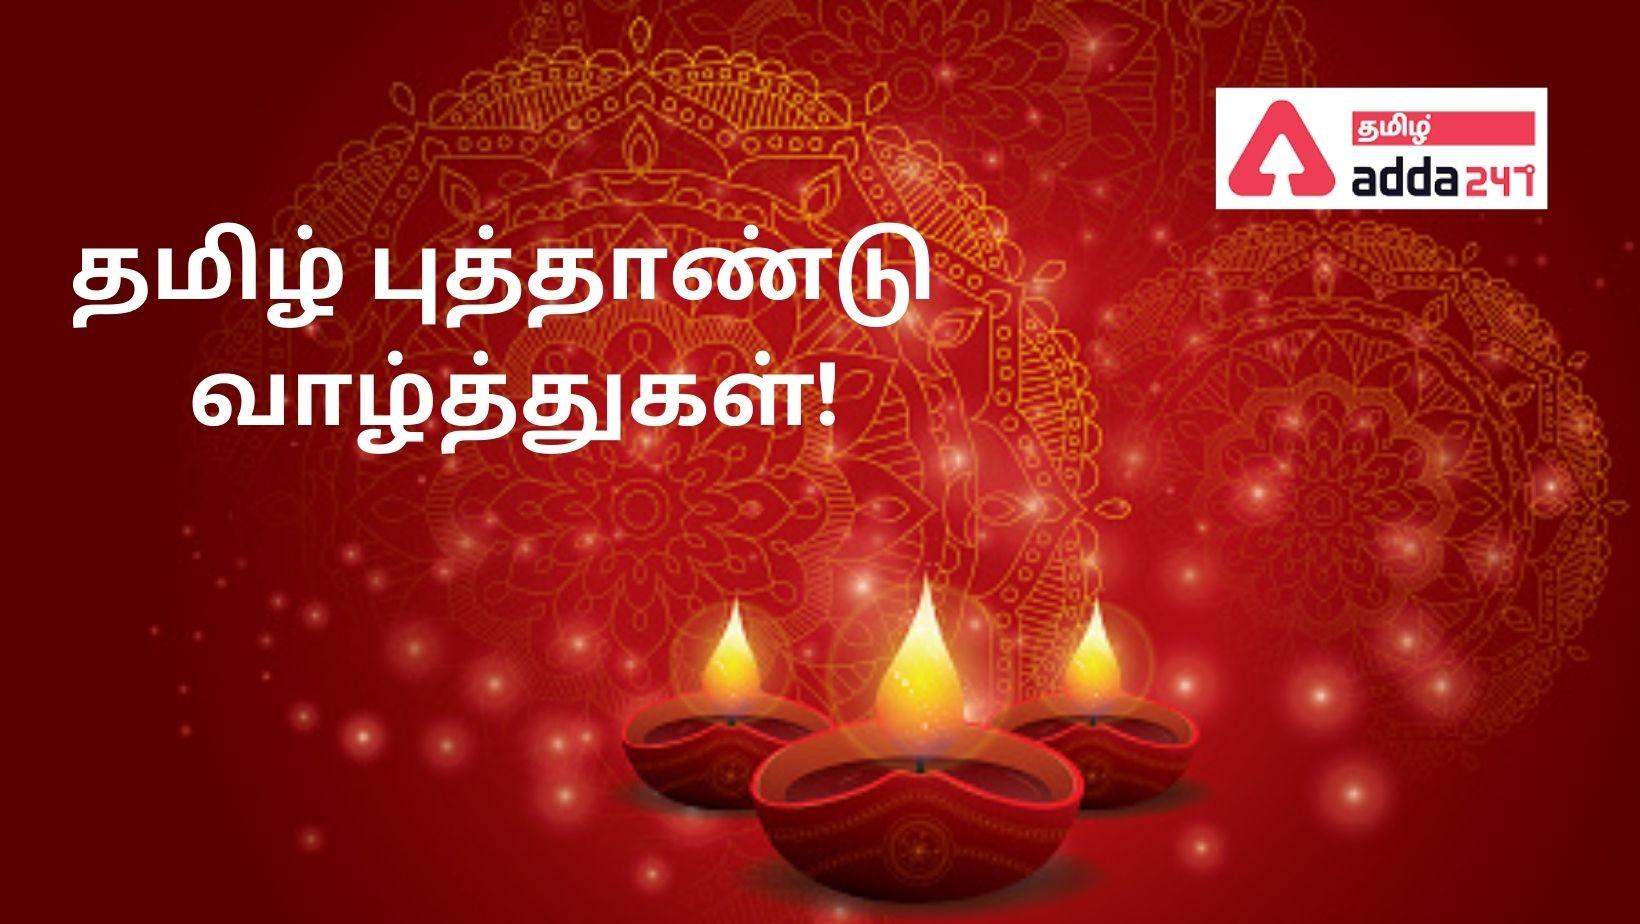 Tamil New Year | தமிழ் புத்தாண்டு_30.1